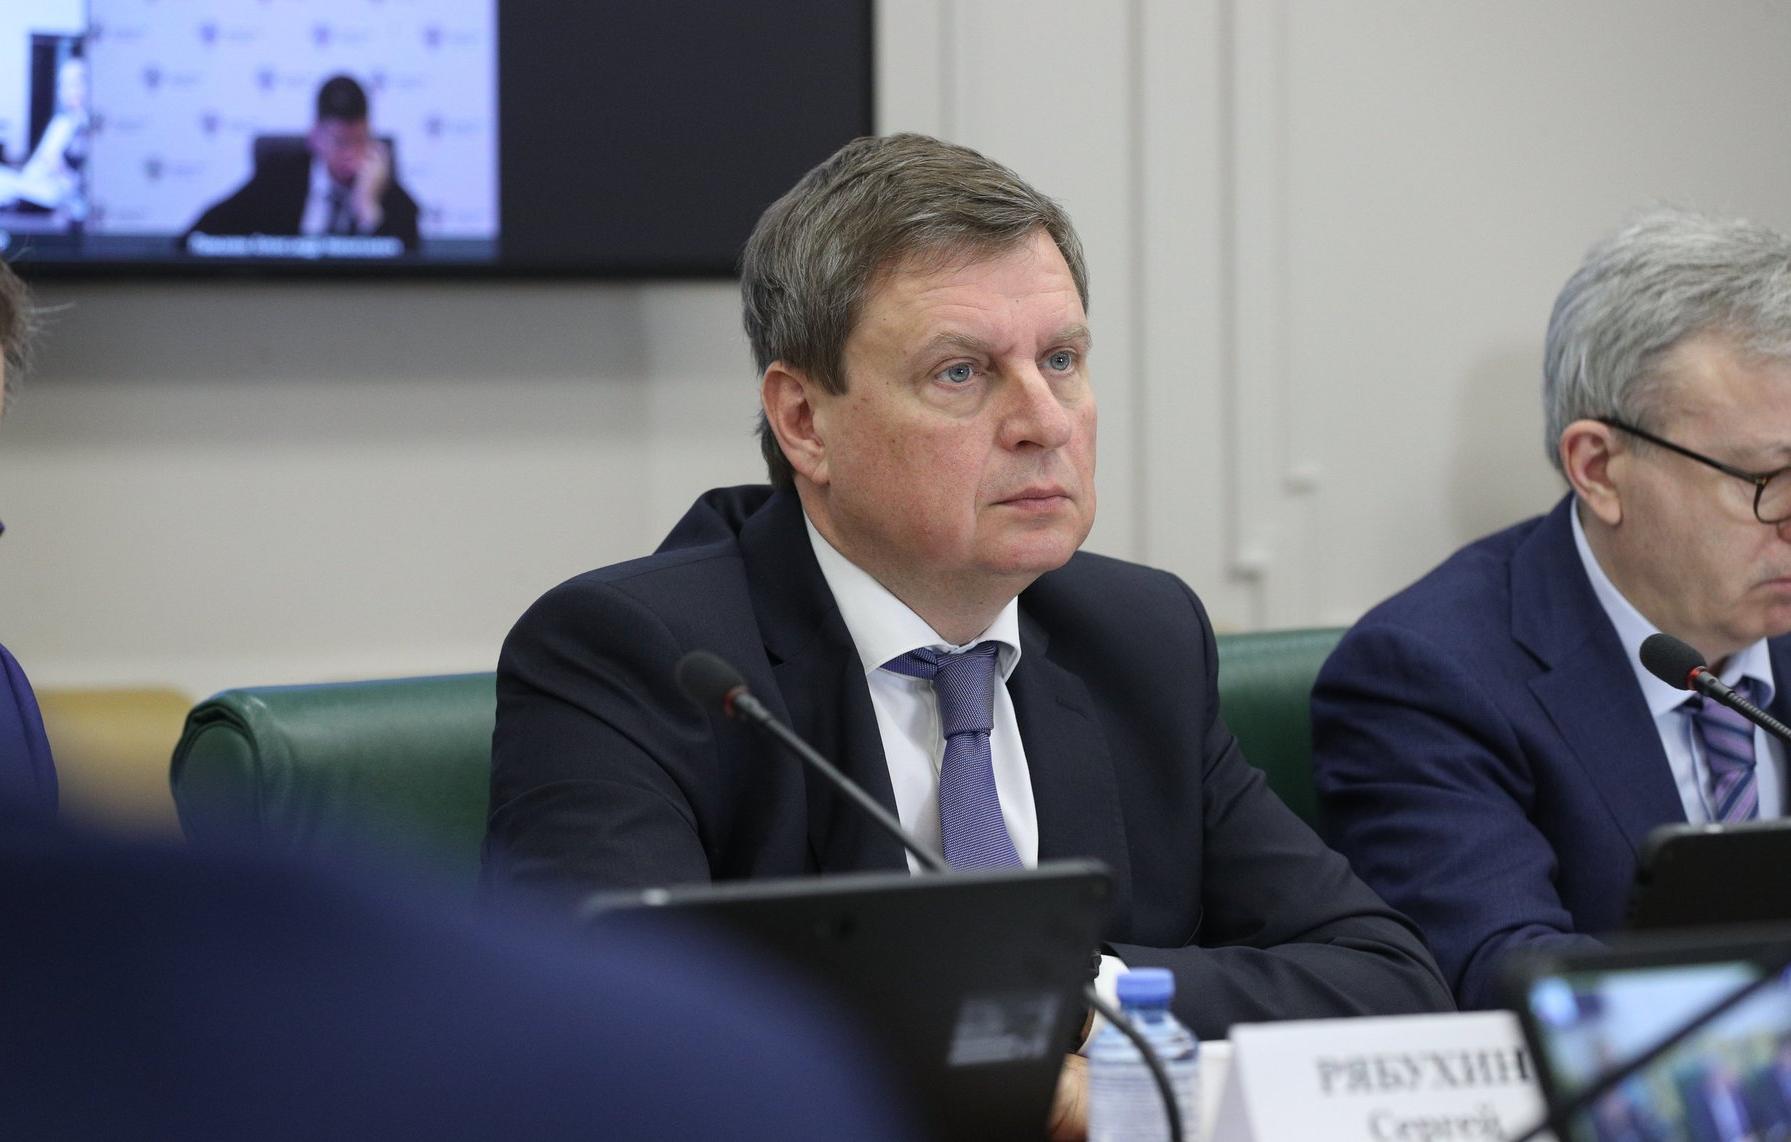 Андрей Епишин: В условиях санкций необходима максимальная мобилизация усилий для стабильного роста экономики - новости Афанасий